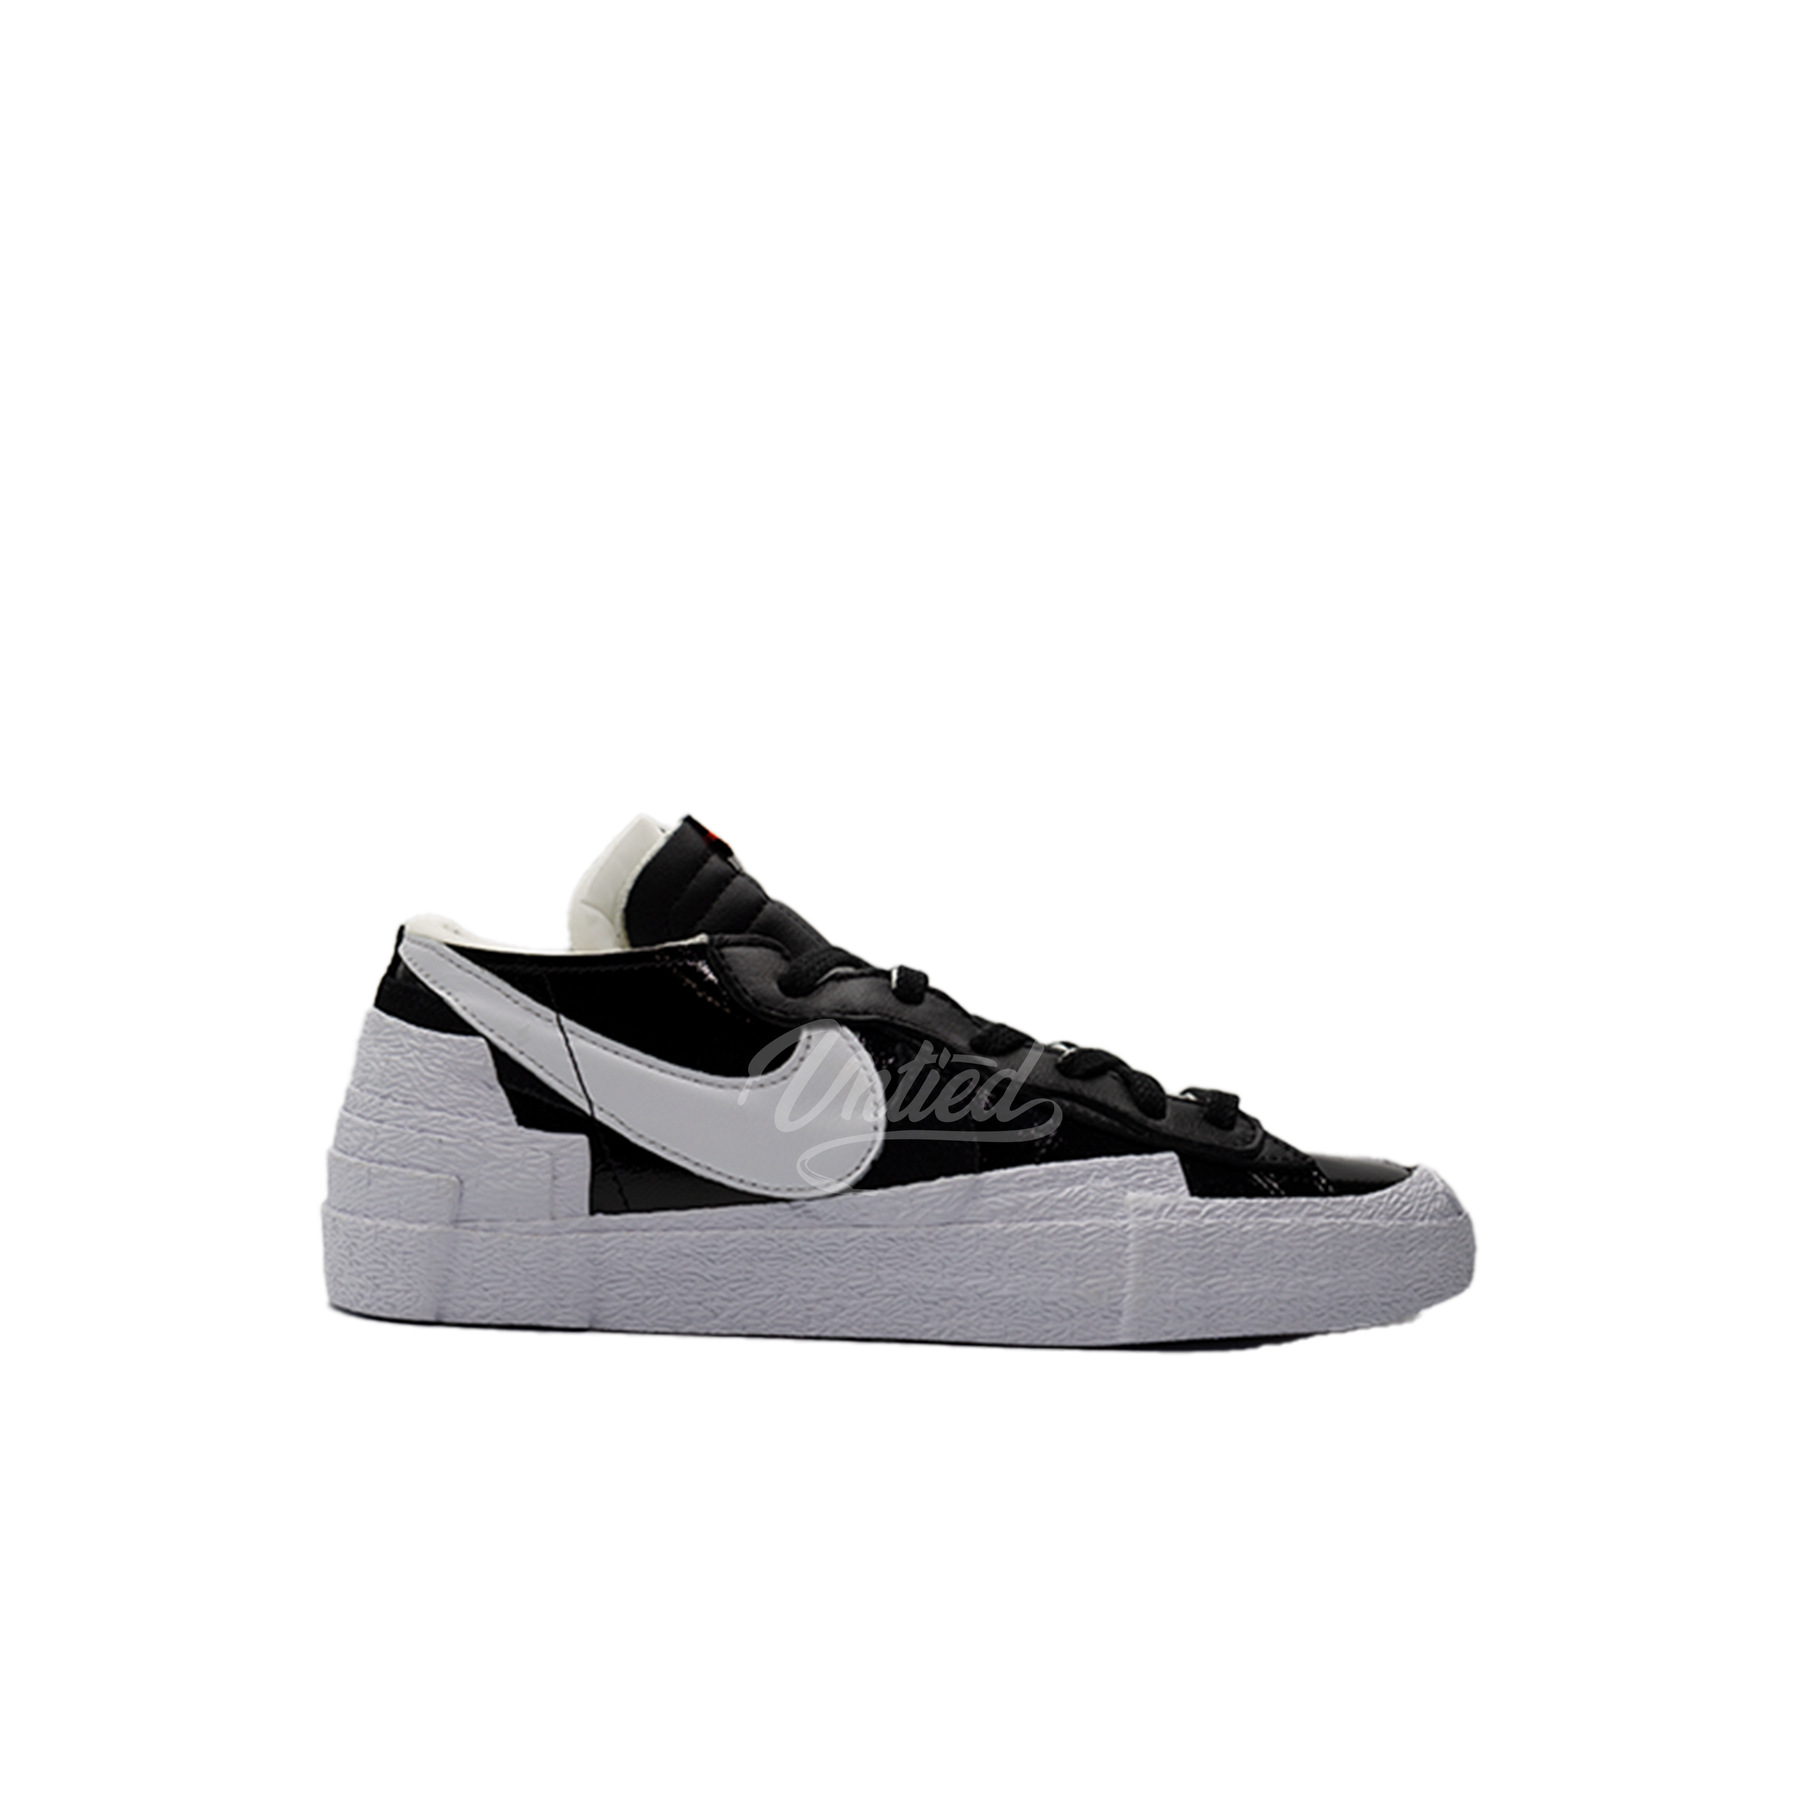 Nike x Sacai Blazer Low "Black Patent Leather"